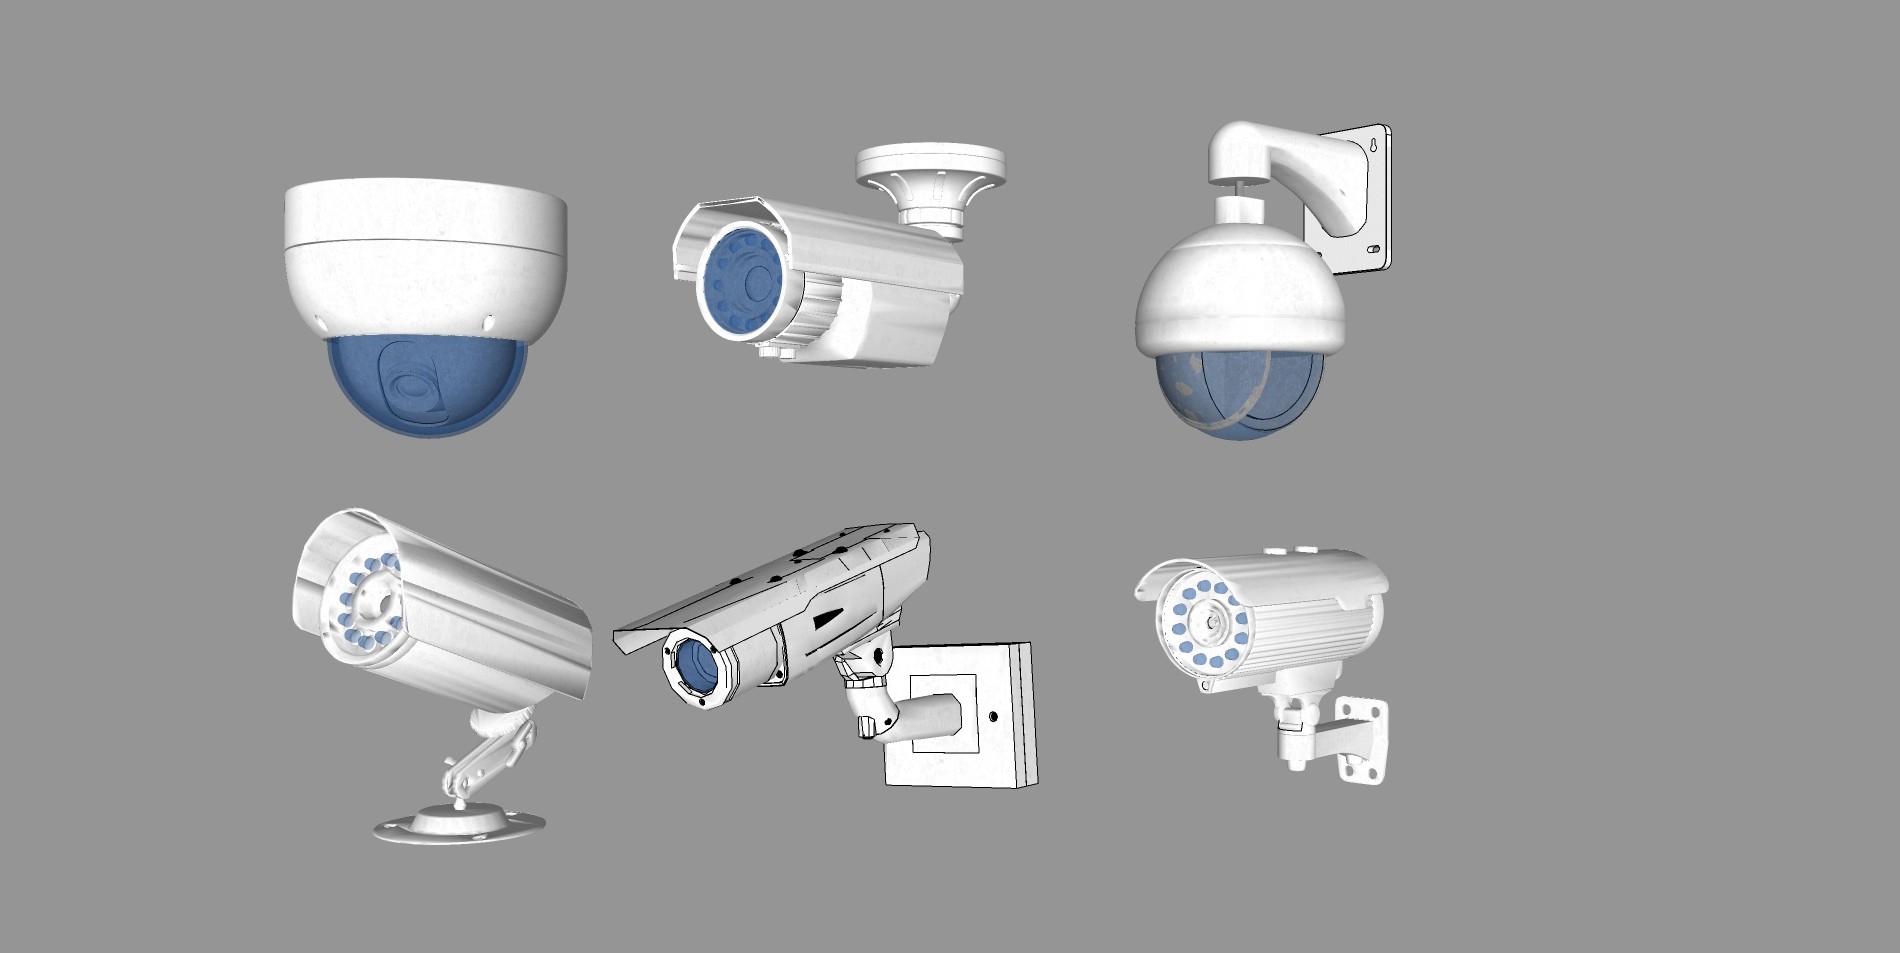 监控摄影头产品介绍Powerpoint幻灯片模板 Seagle – CCTV Powerpoint Templates – 设计小咖